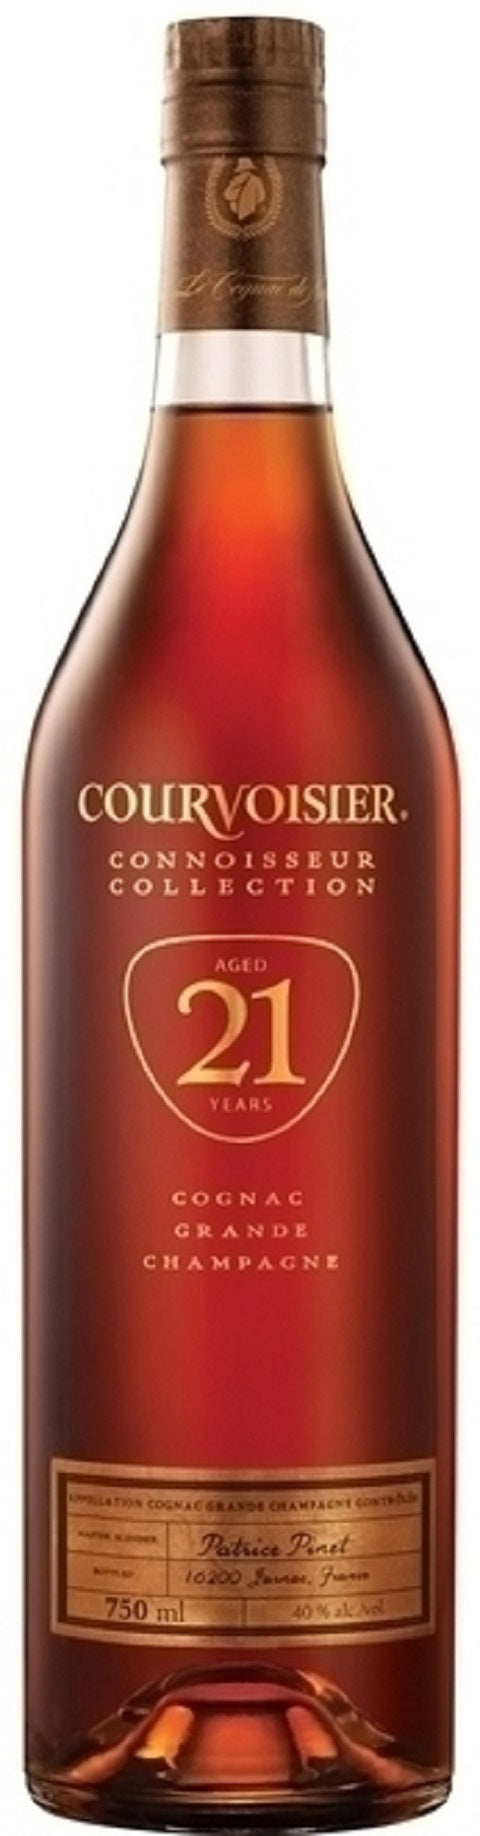 Courvoisier Cognac 21 Year